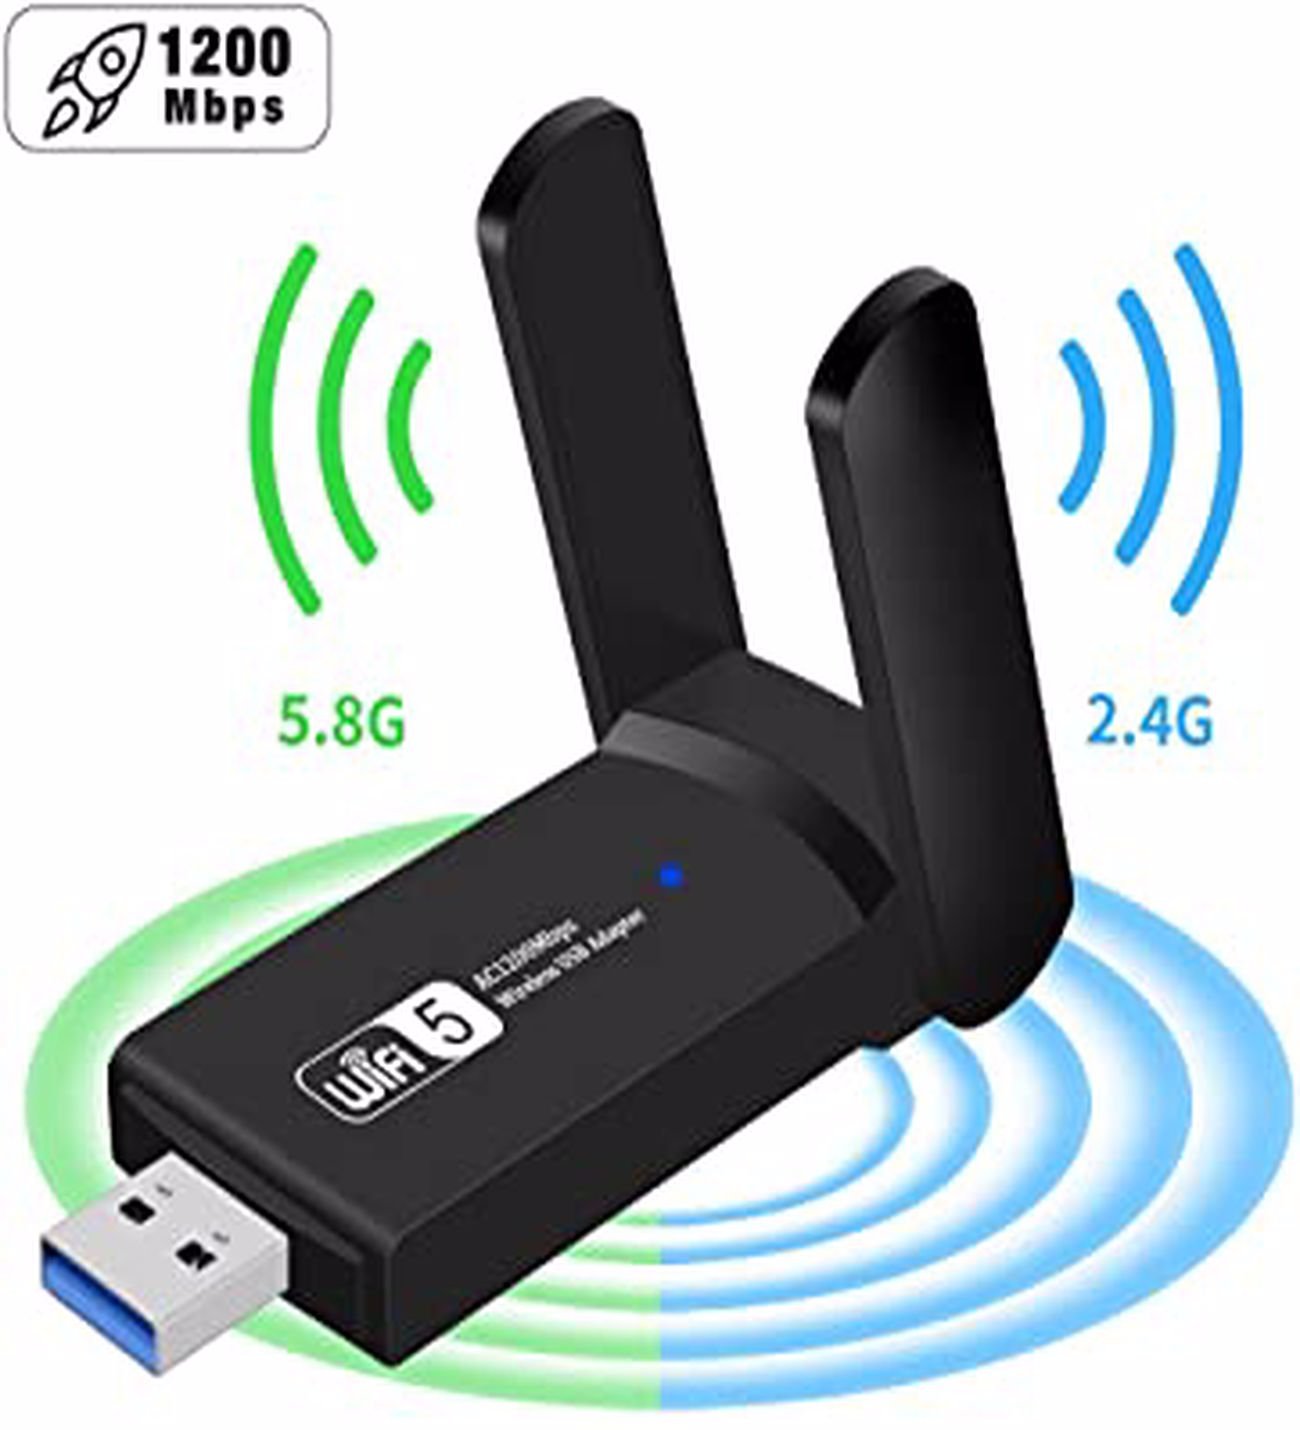 Vothoon Dual Band USB 3.0 Adaptör Kablosuz Wi-Fi Alıcı Ac1200 Mbp